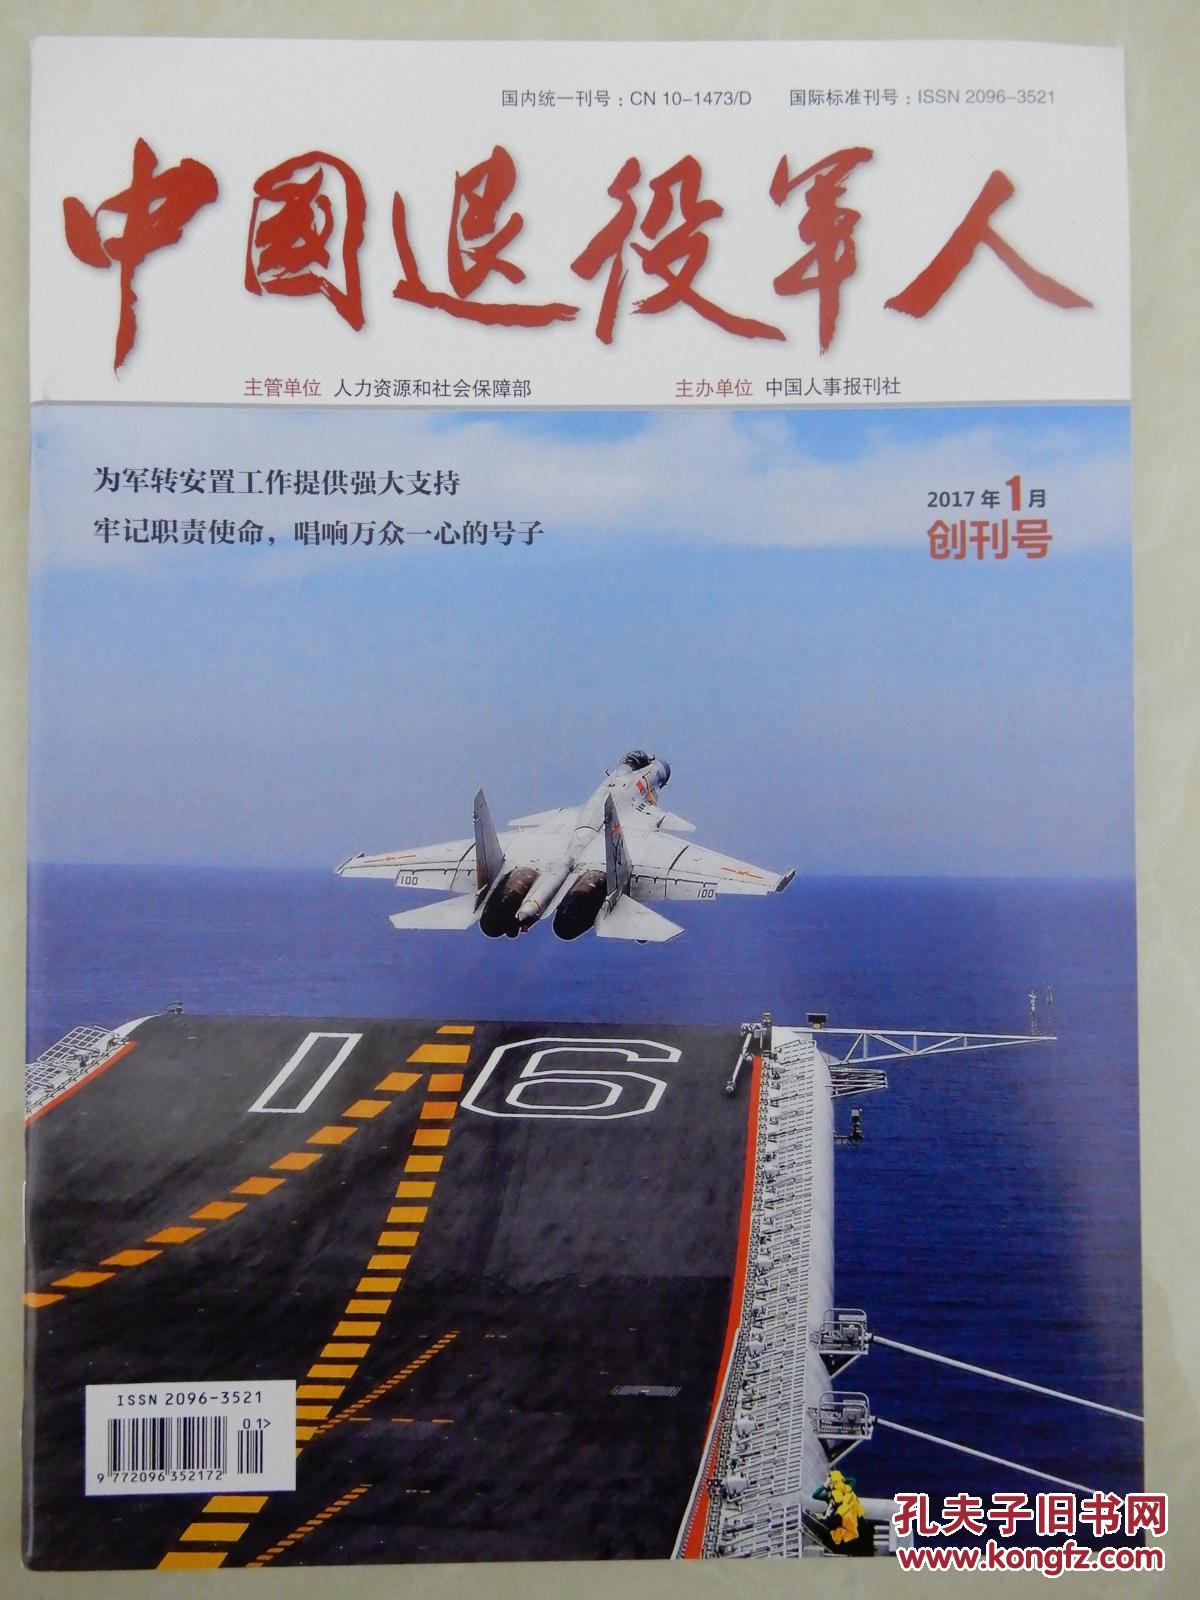 【图】创刊号:转业军官终刊号、中国退役军人